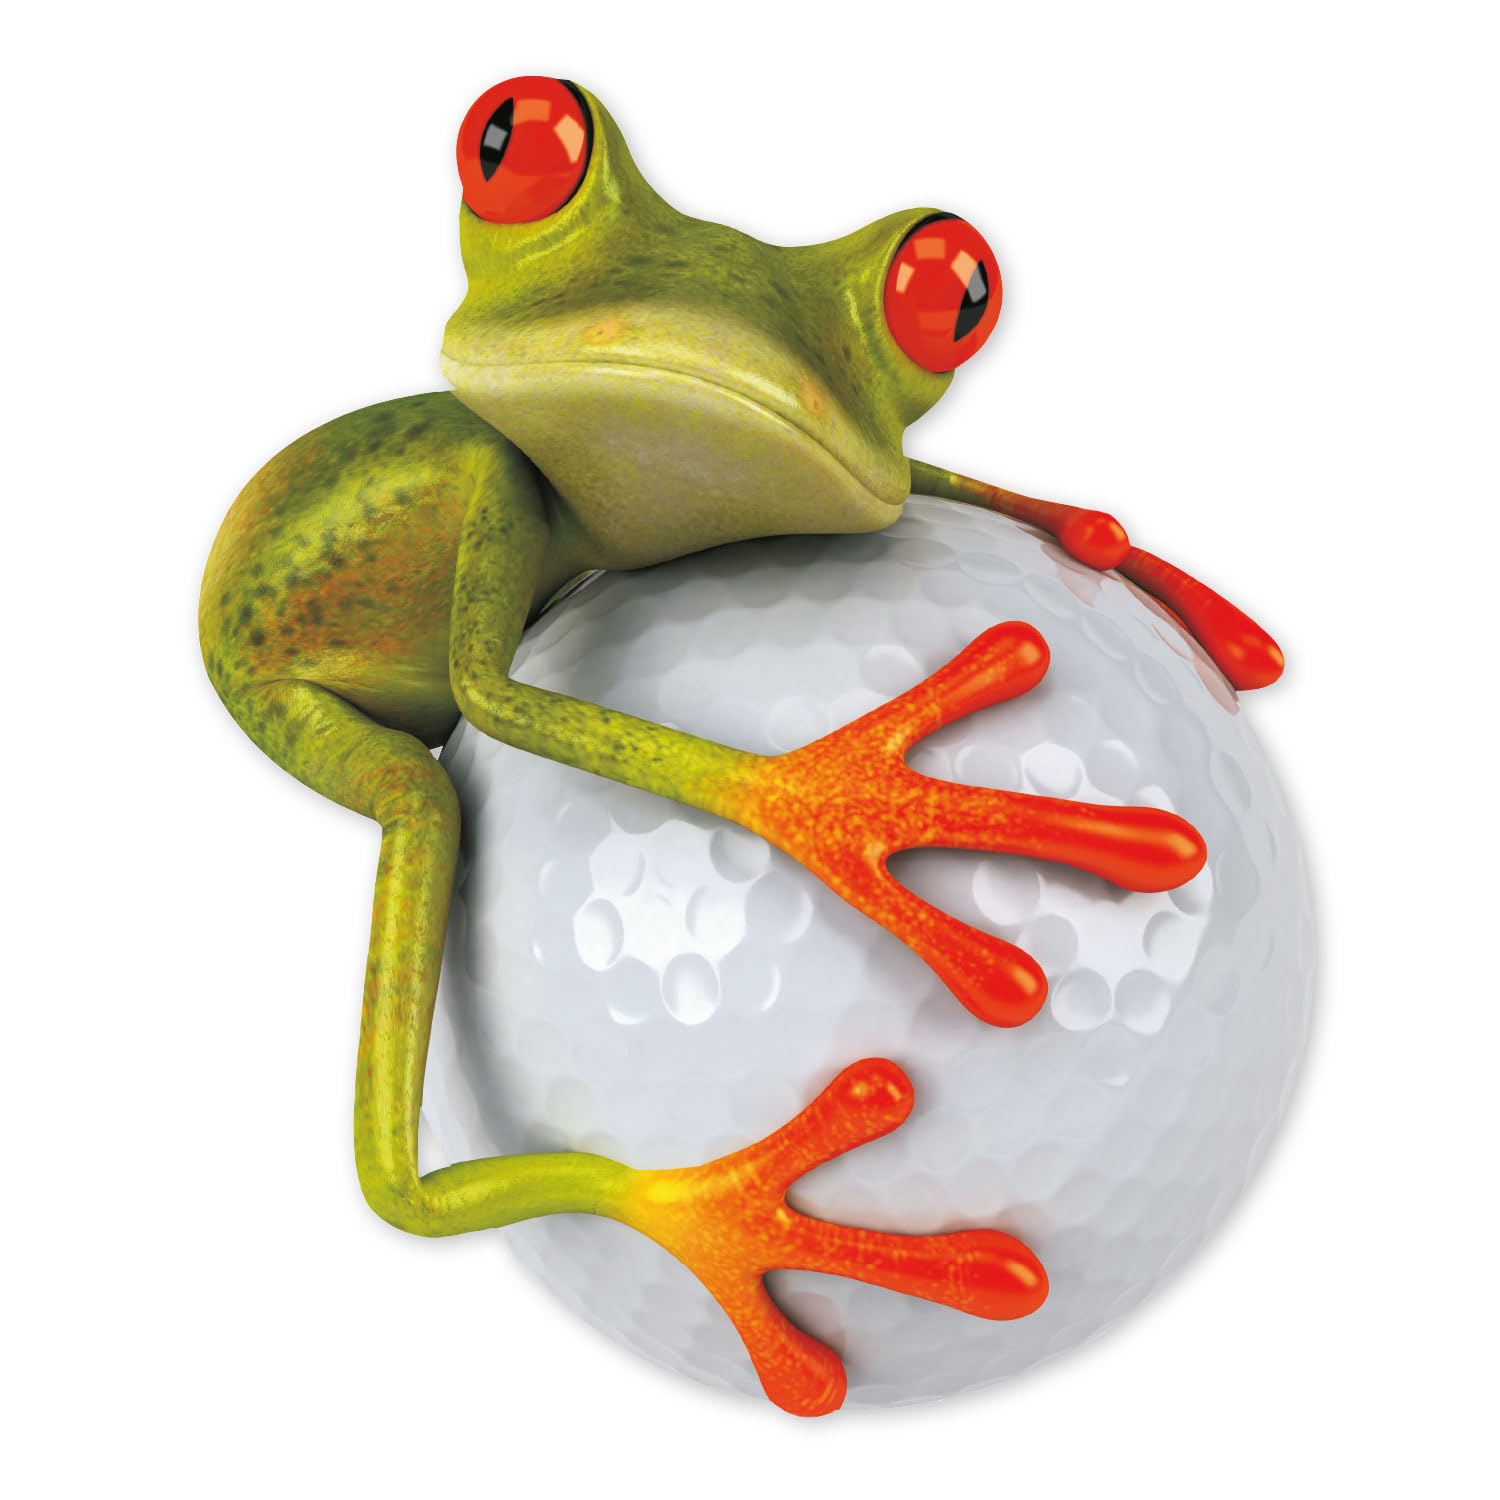 Sticker Frosch Golfball XXL I 75 x 90 cm groß I Fahrzeug-Aufkleber wetterfest Auto-Aufkleber Wohnmobil Wohnwagen für Golfer Golf-Spieler I kfz_329 von younikat